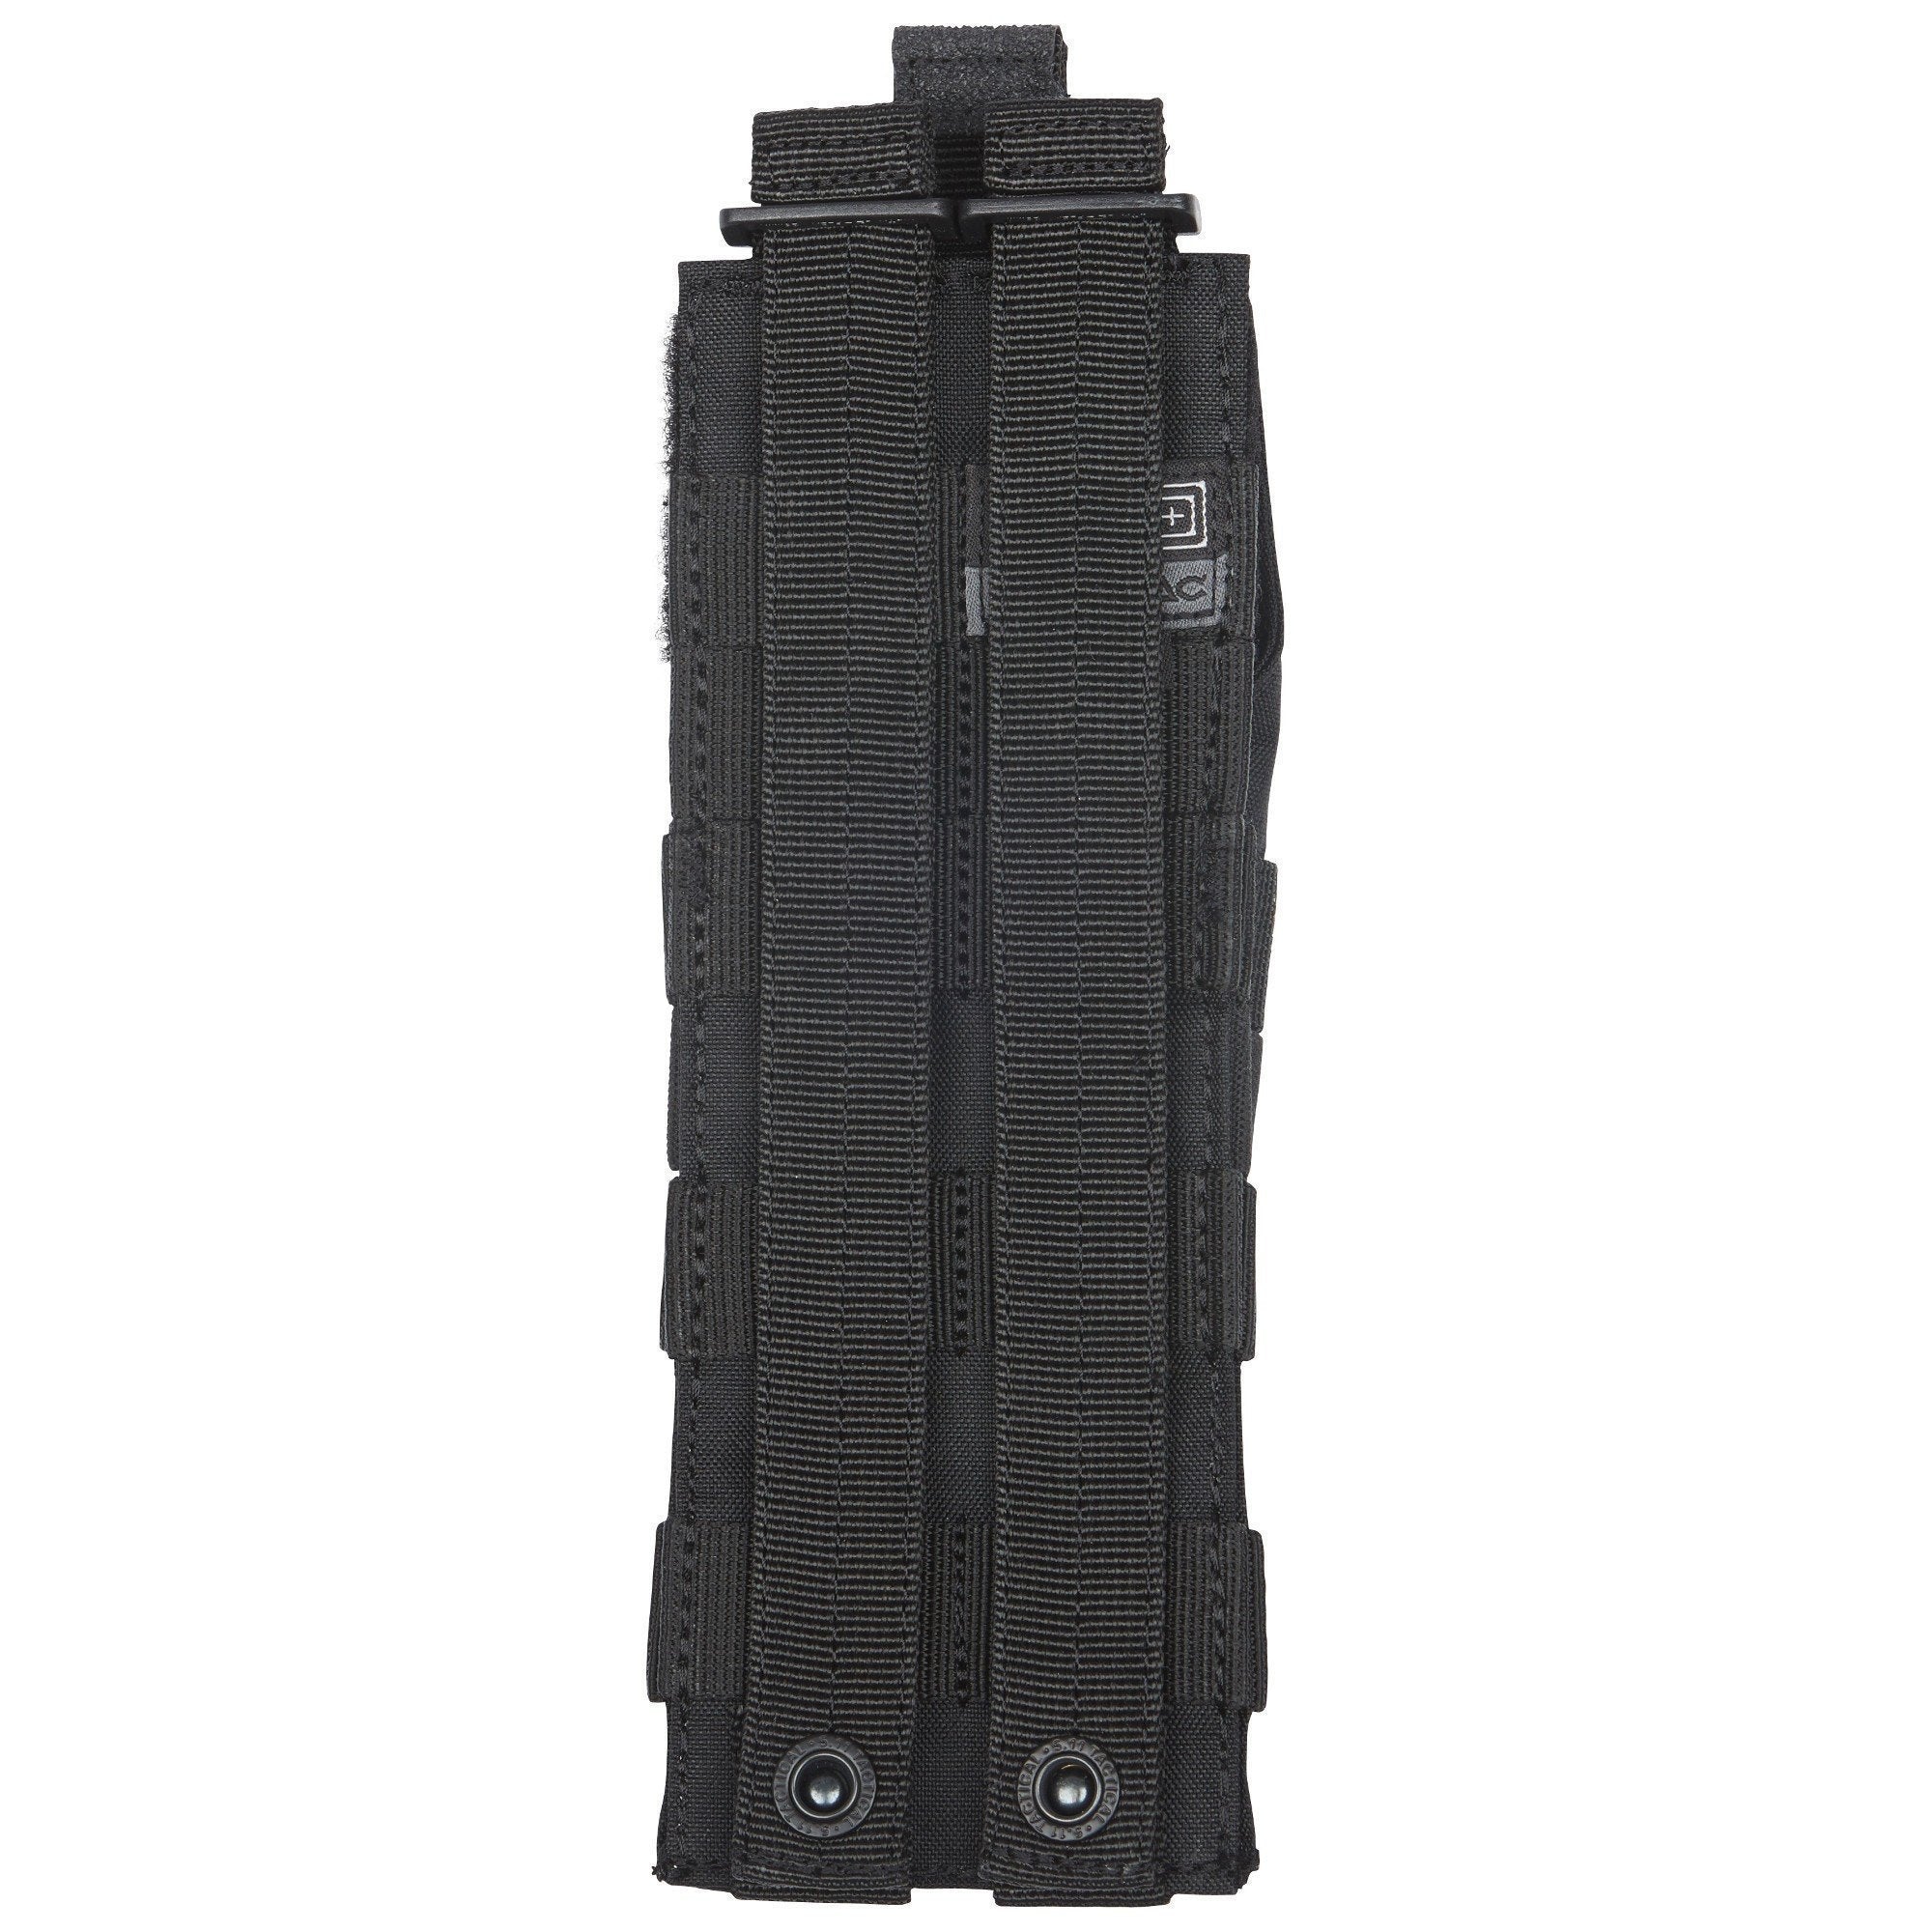 5.11 Tactical Rigid Cuff Case Accessories 5.11 Tactical Black Tactical Gear Supplier Tactical Distributors Australia